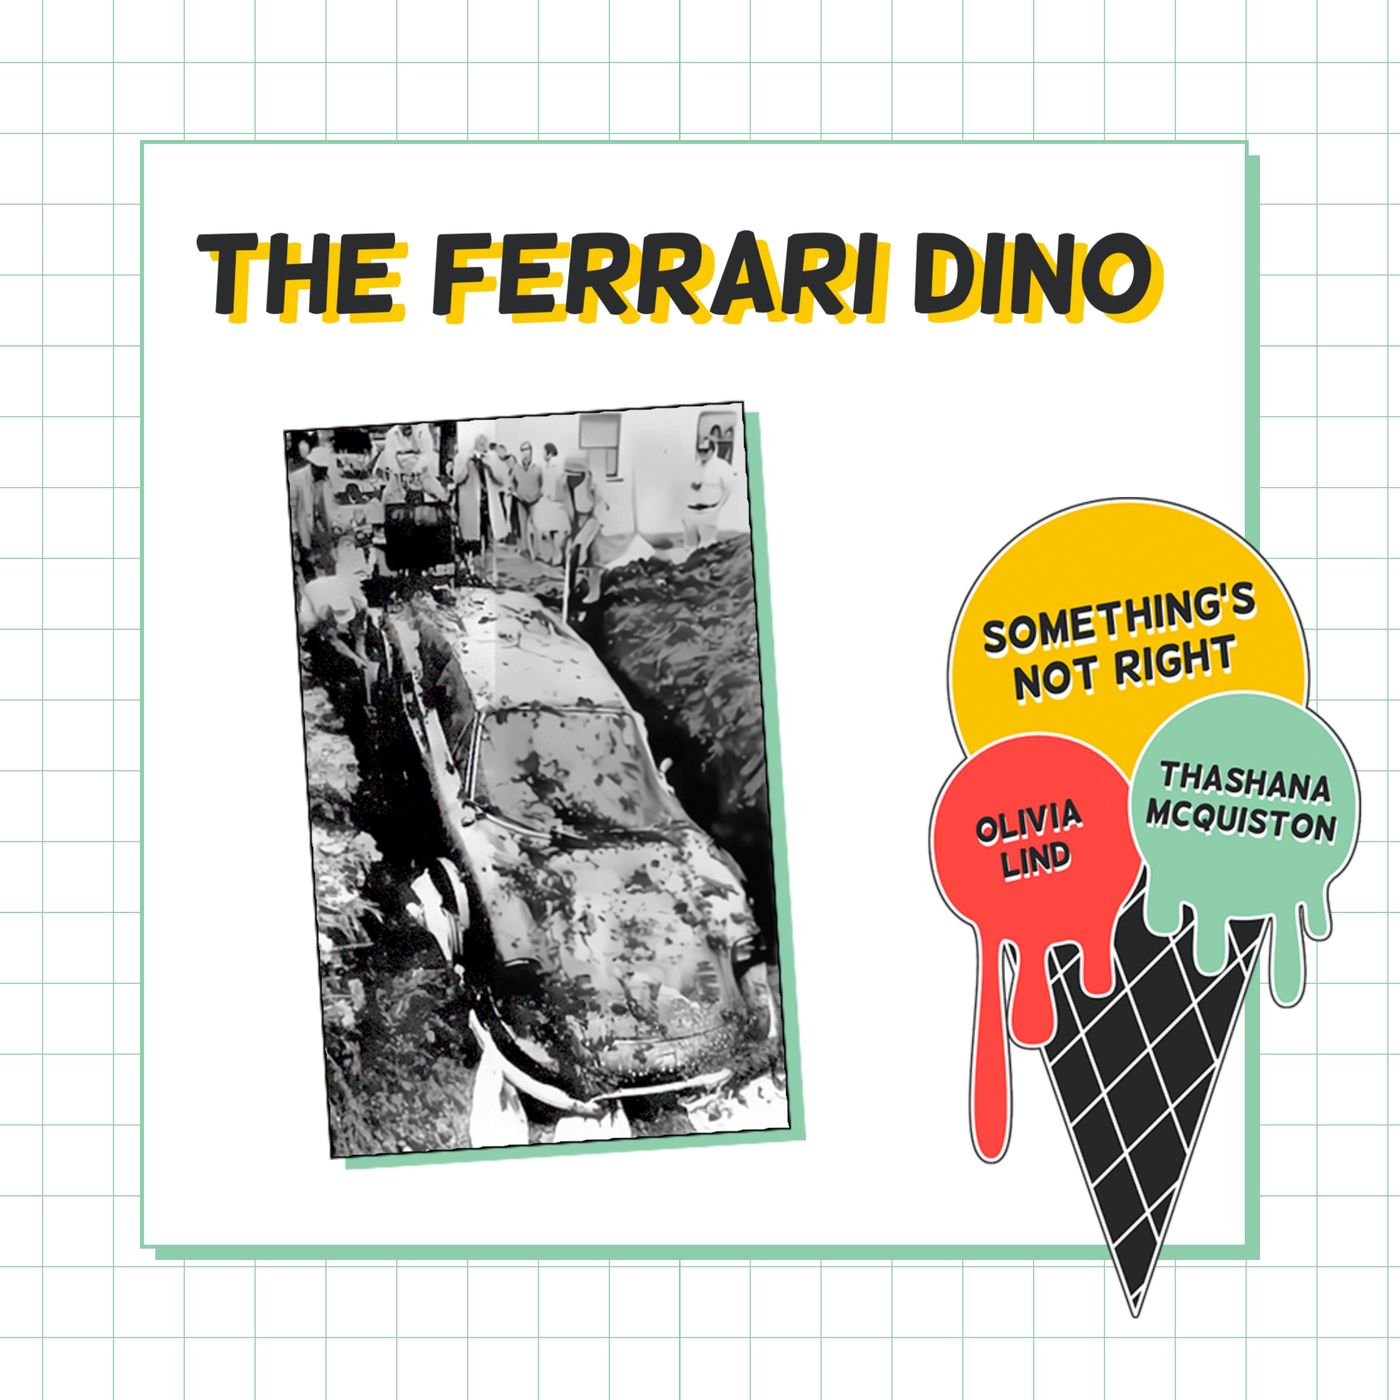 The Ferrari Dino